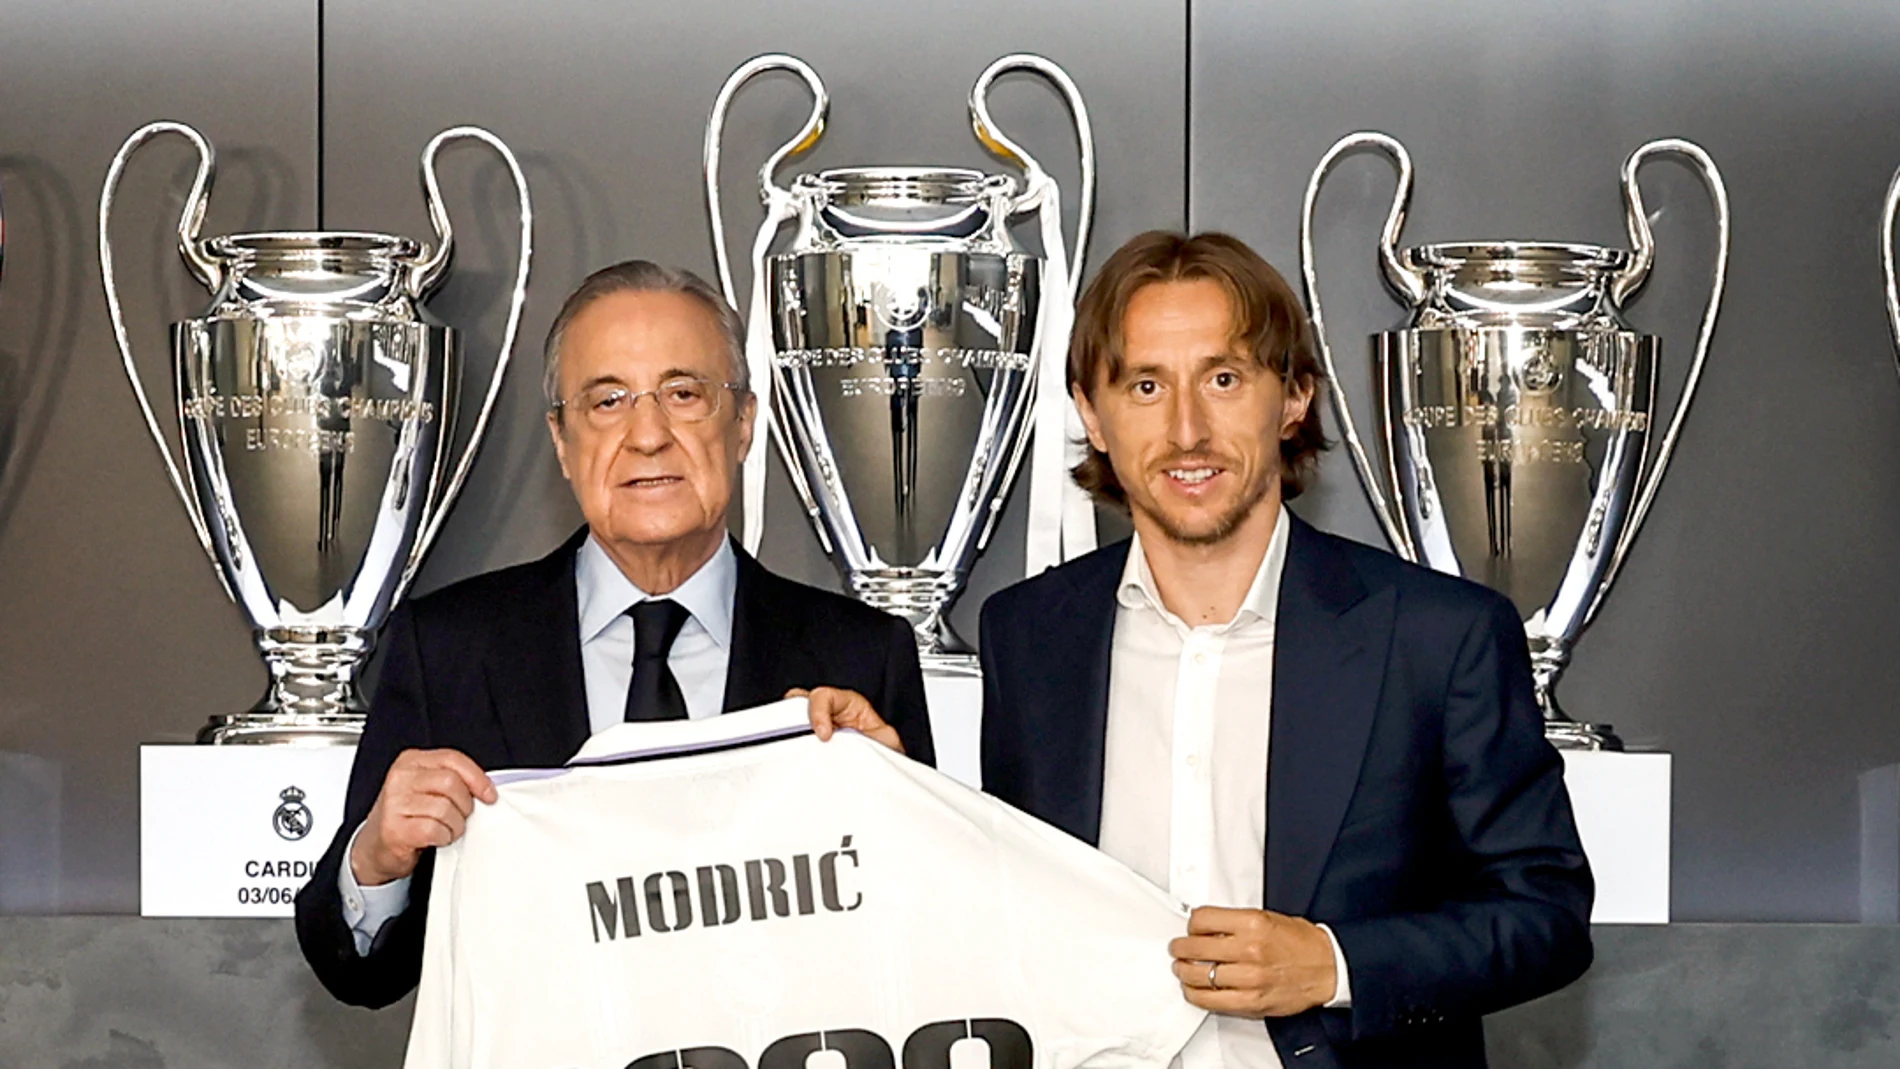 Luka Modric renueva con el Real Madrid hasta 2023